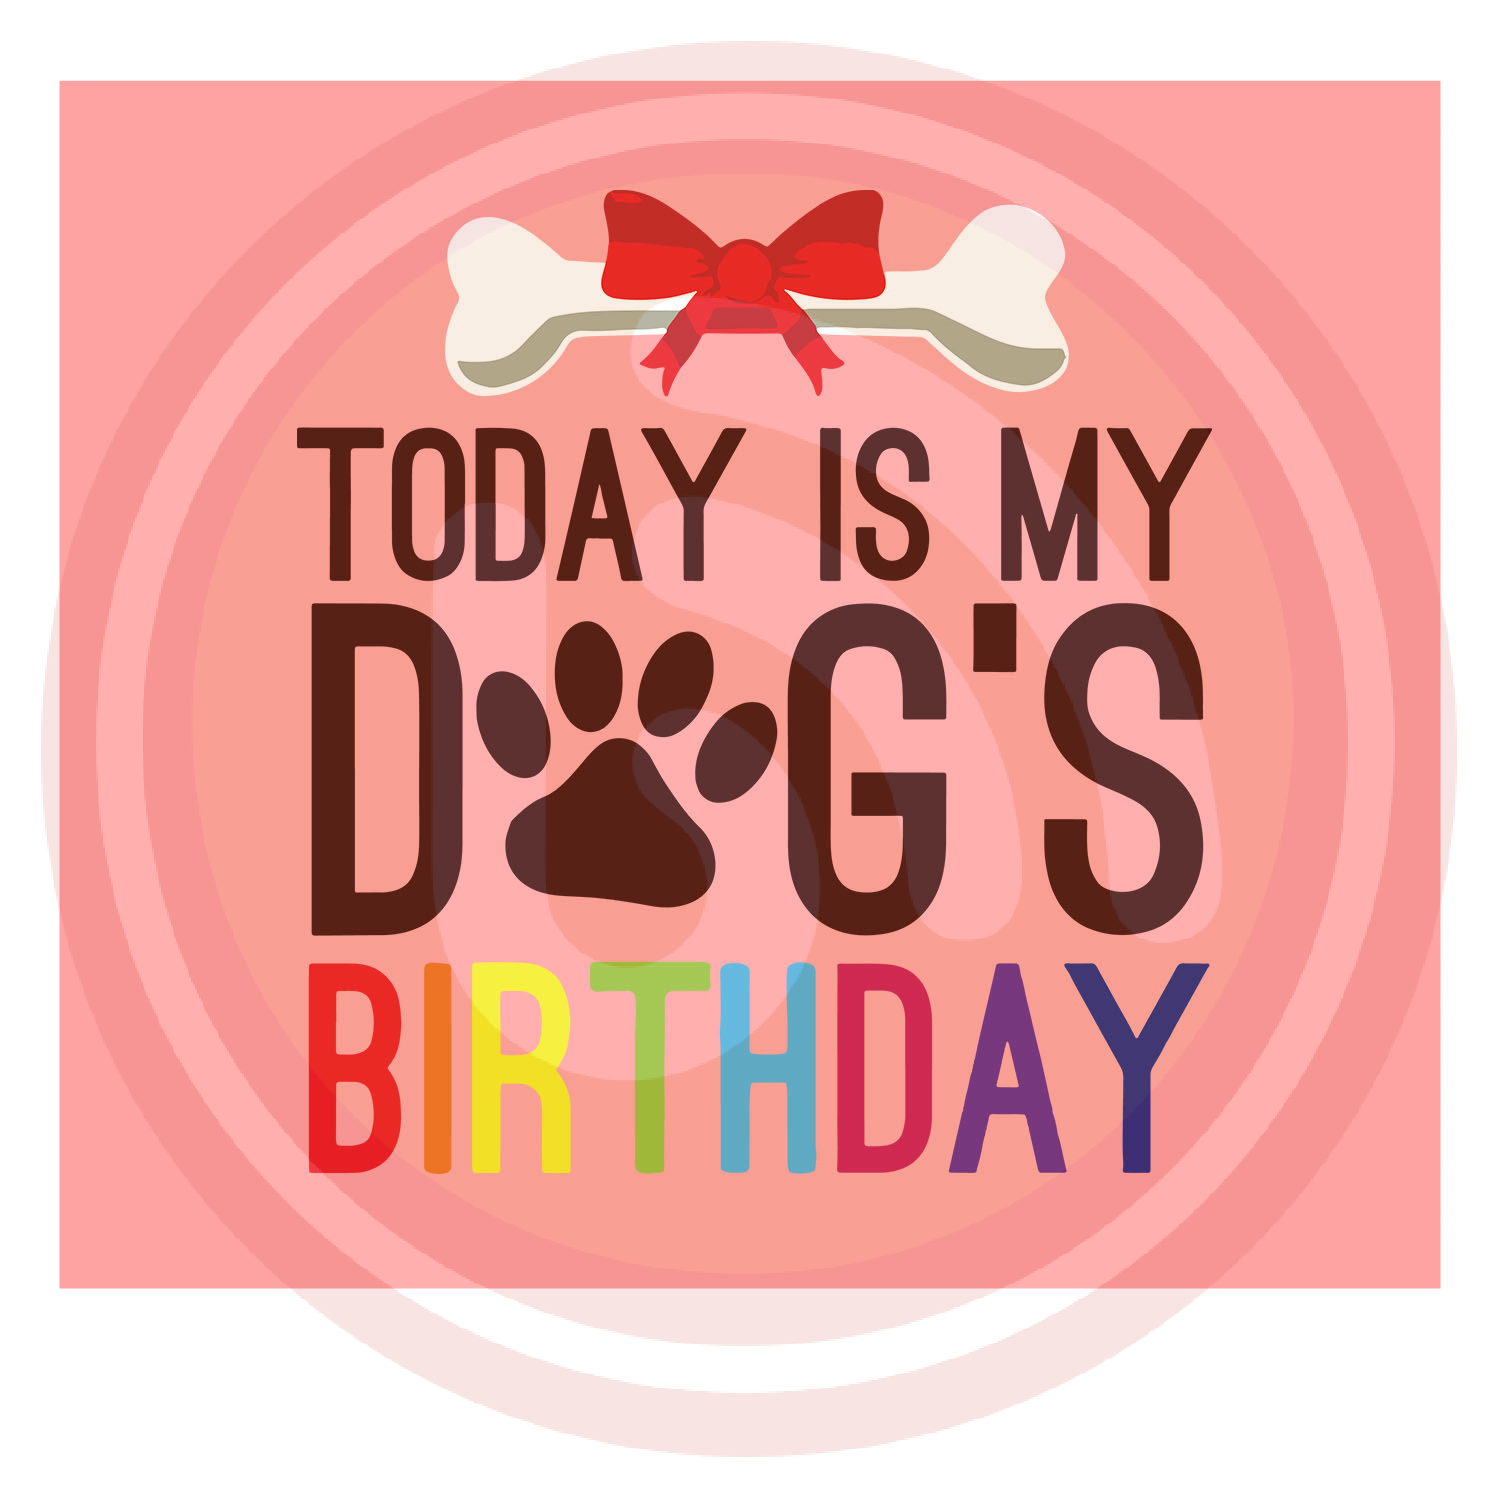 TODAY IS MY DOG BIRTHDAY svg, Dog Birthday svg, dog sv, Happy